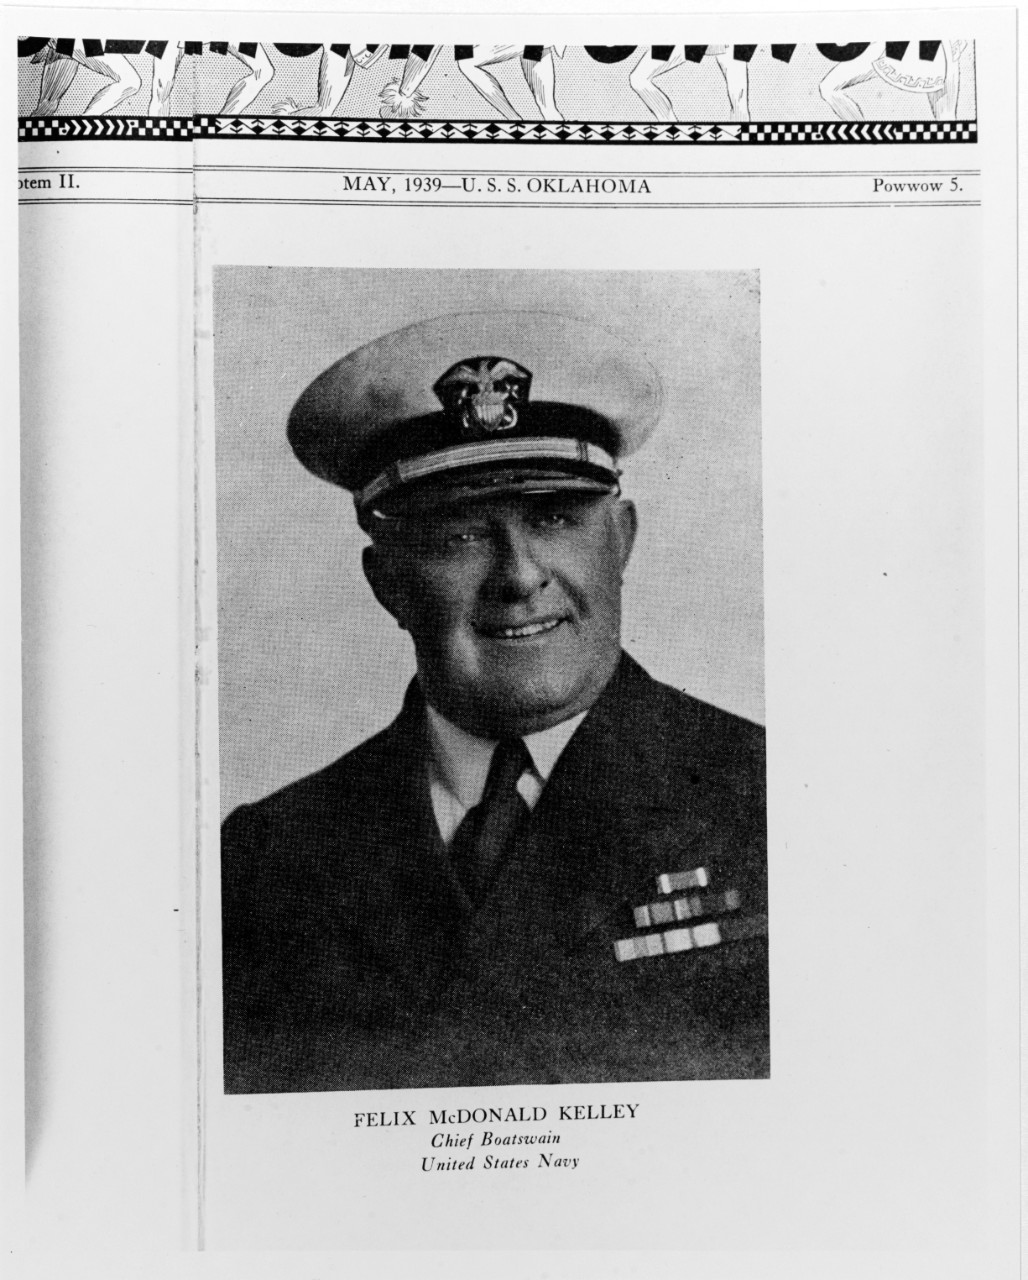 Felix McDonald Kelley, Chief Boatswain, USN